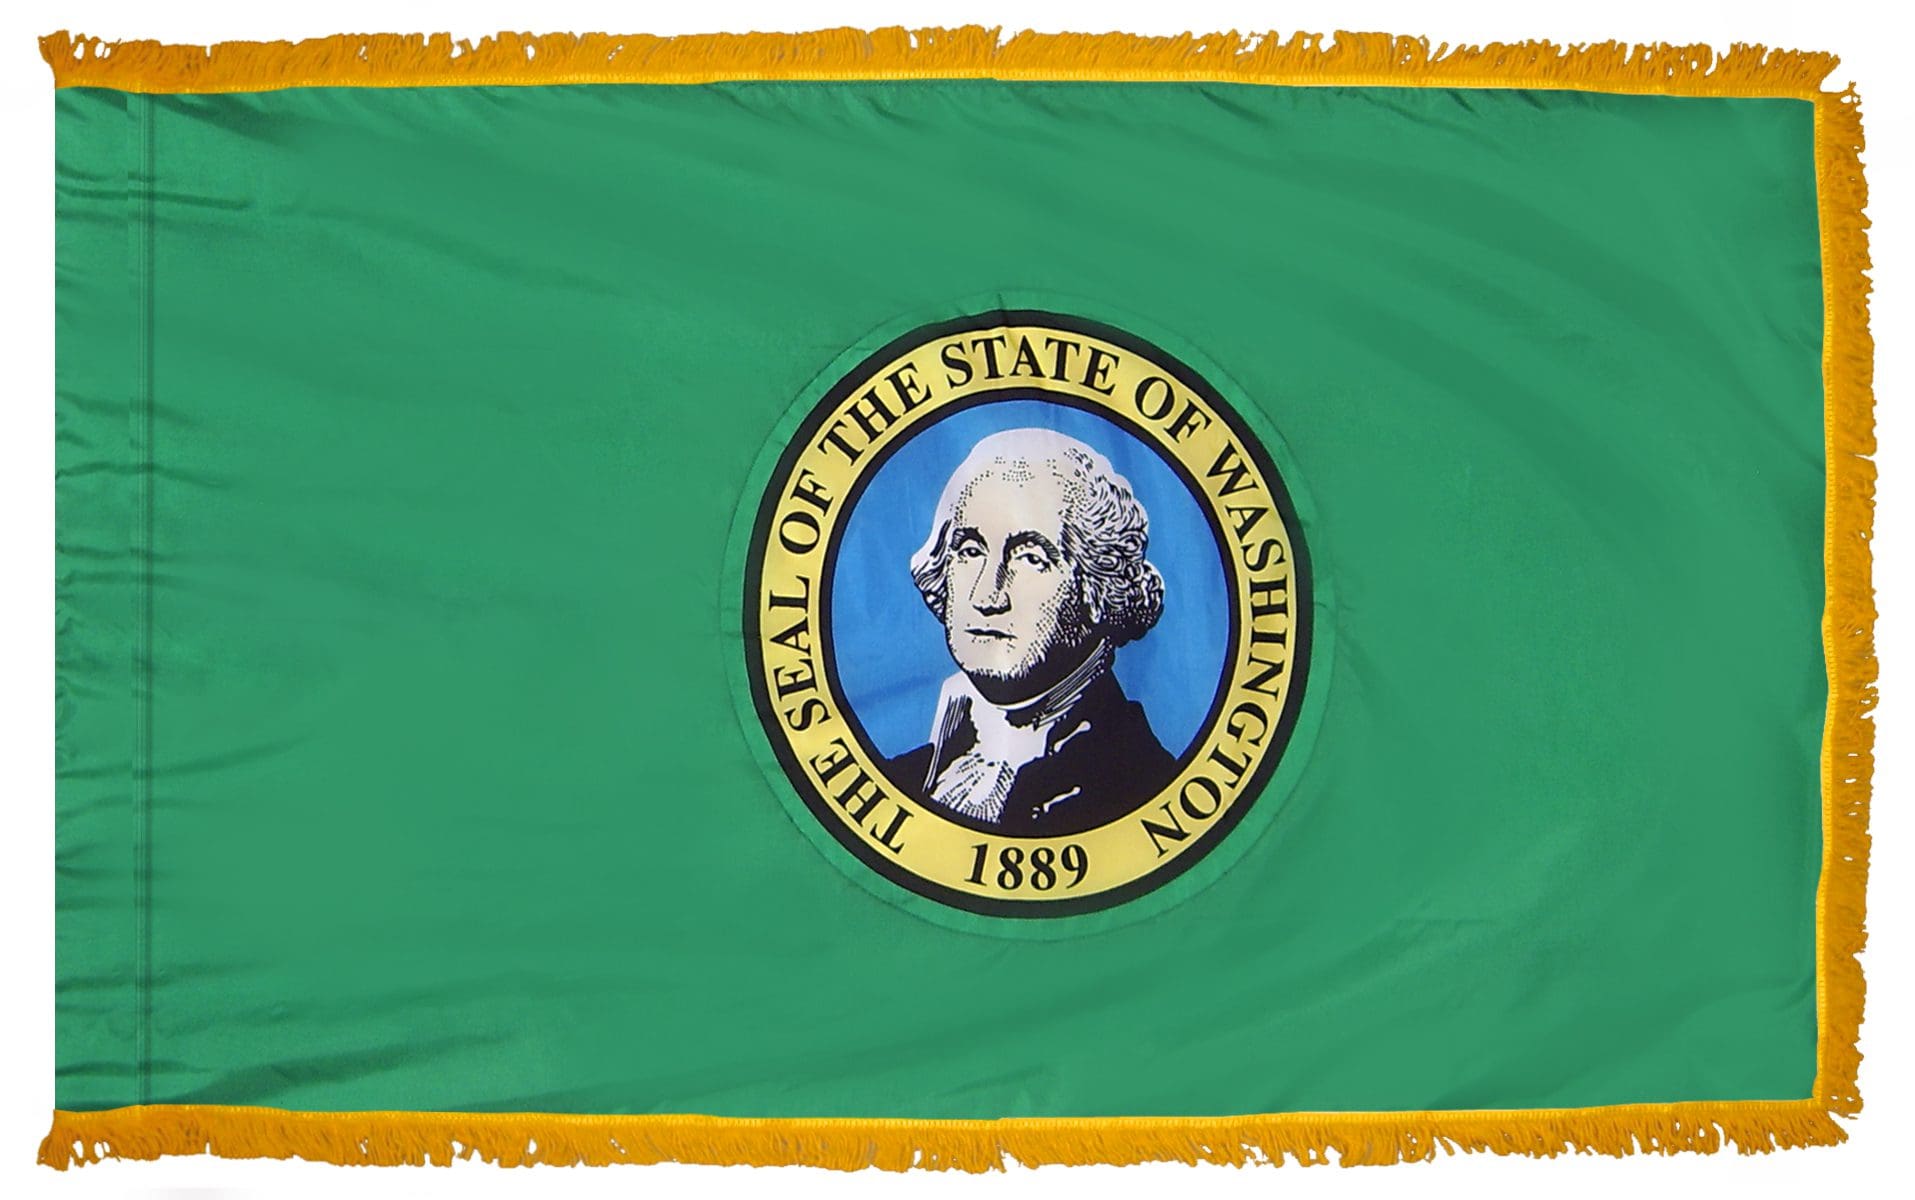 Washington State Flag 3x5 or 4x6 ft. (fringed)